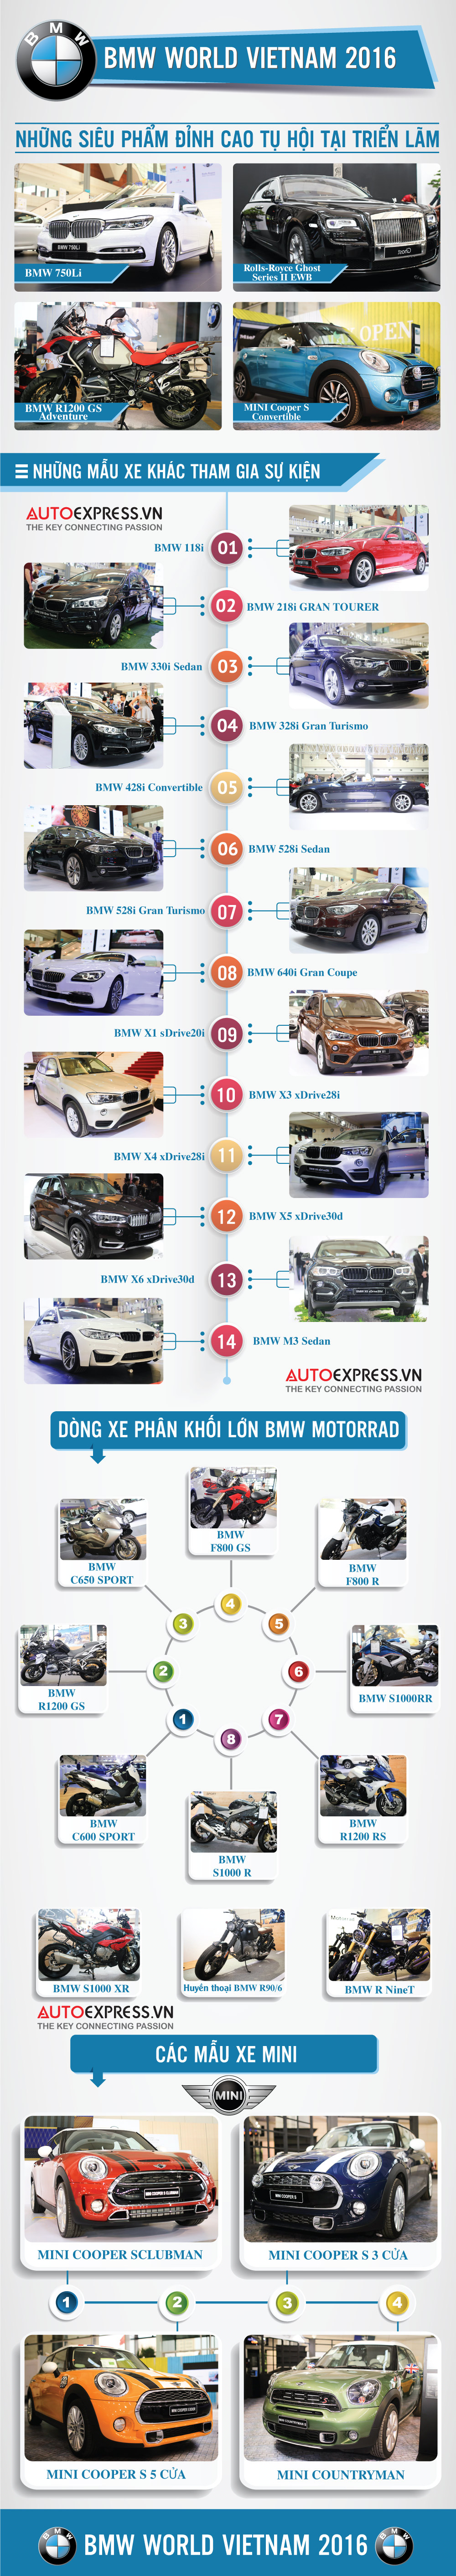 Các mẫu xe tại triển lãm BMW World Expo Vietnam 2016